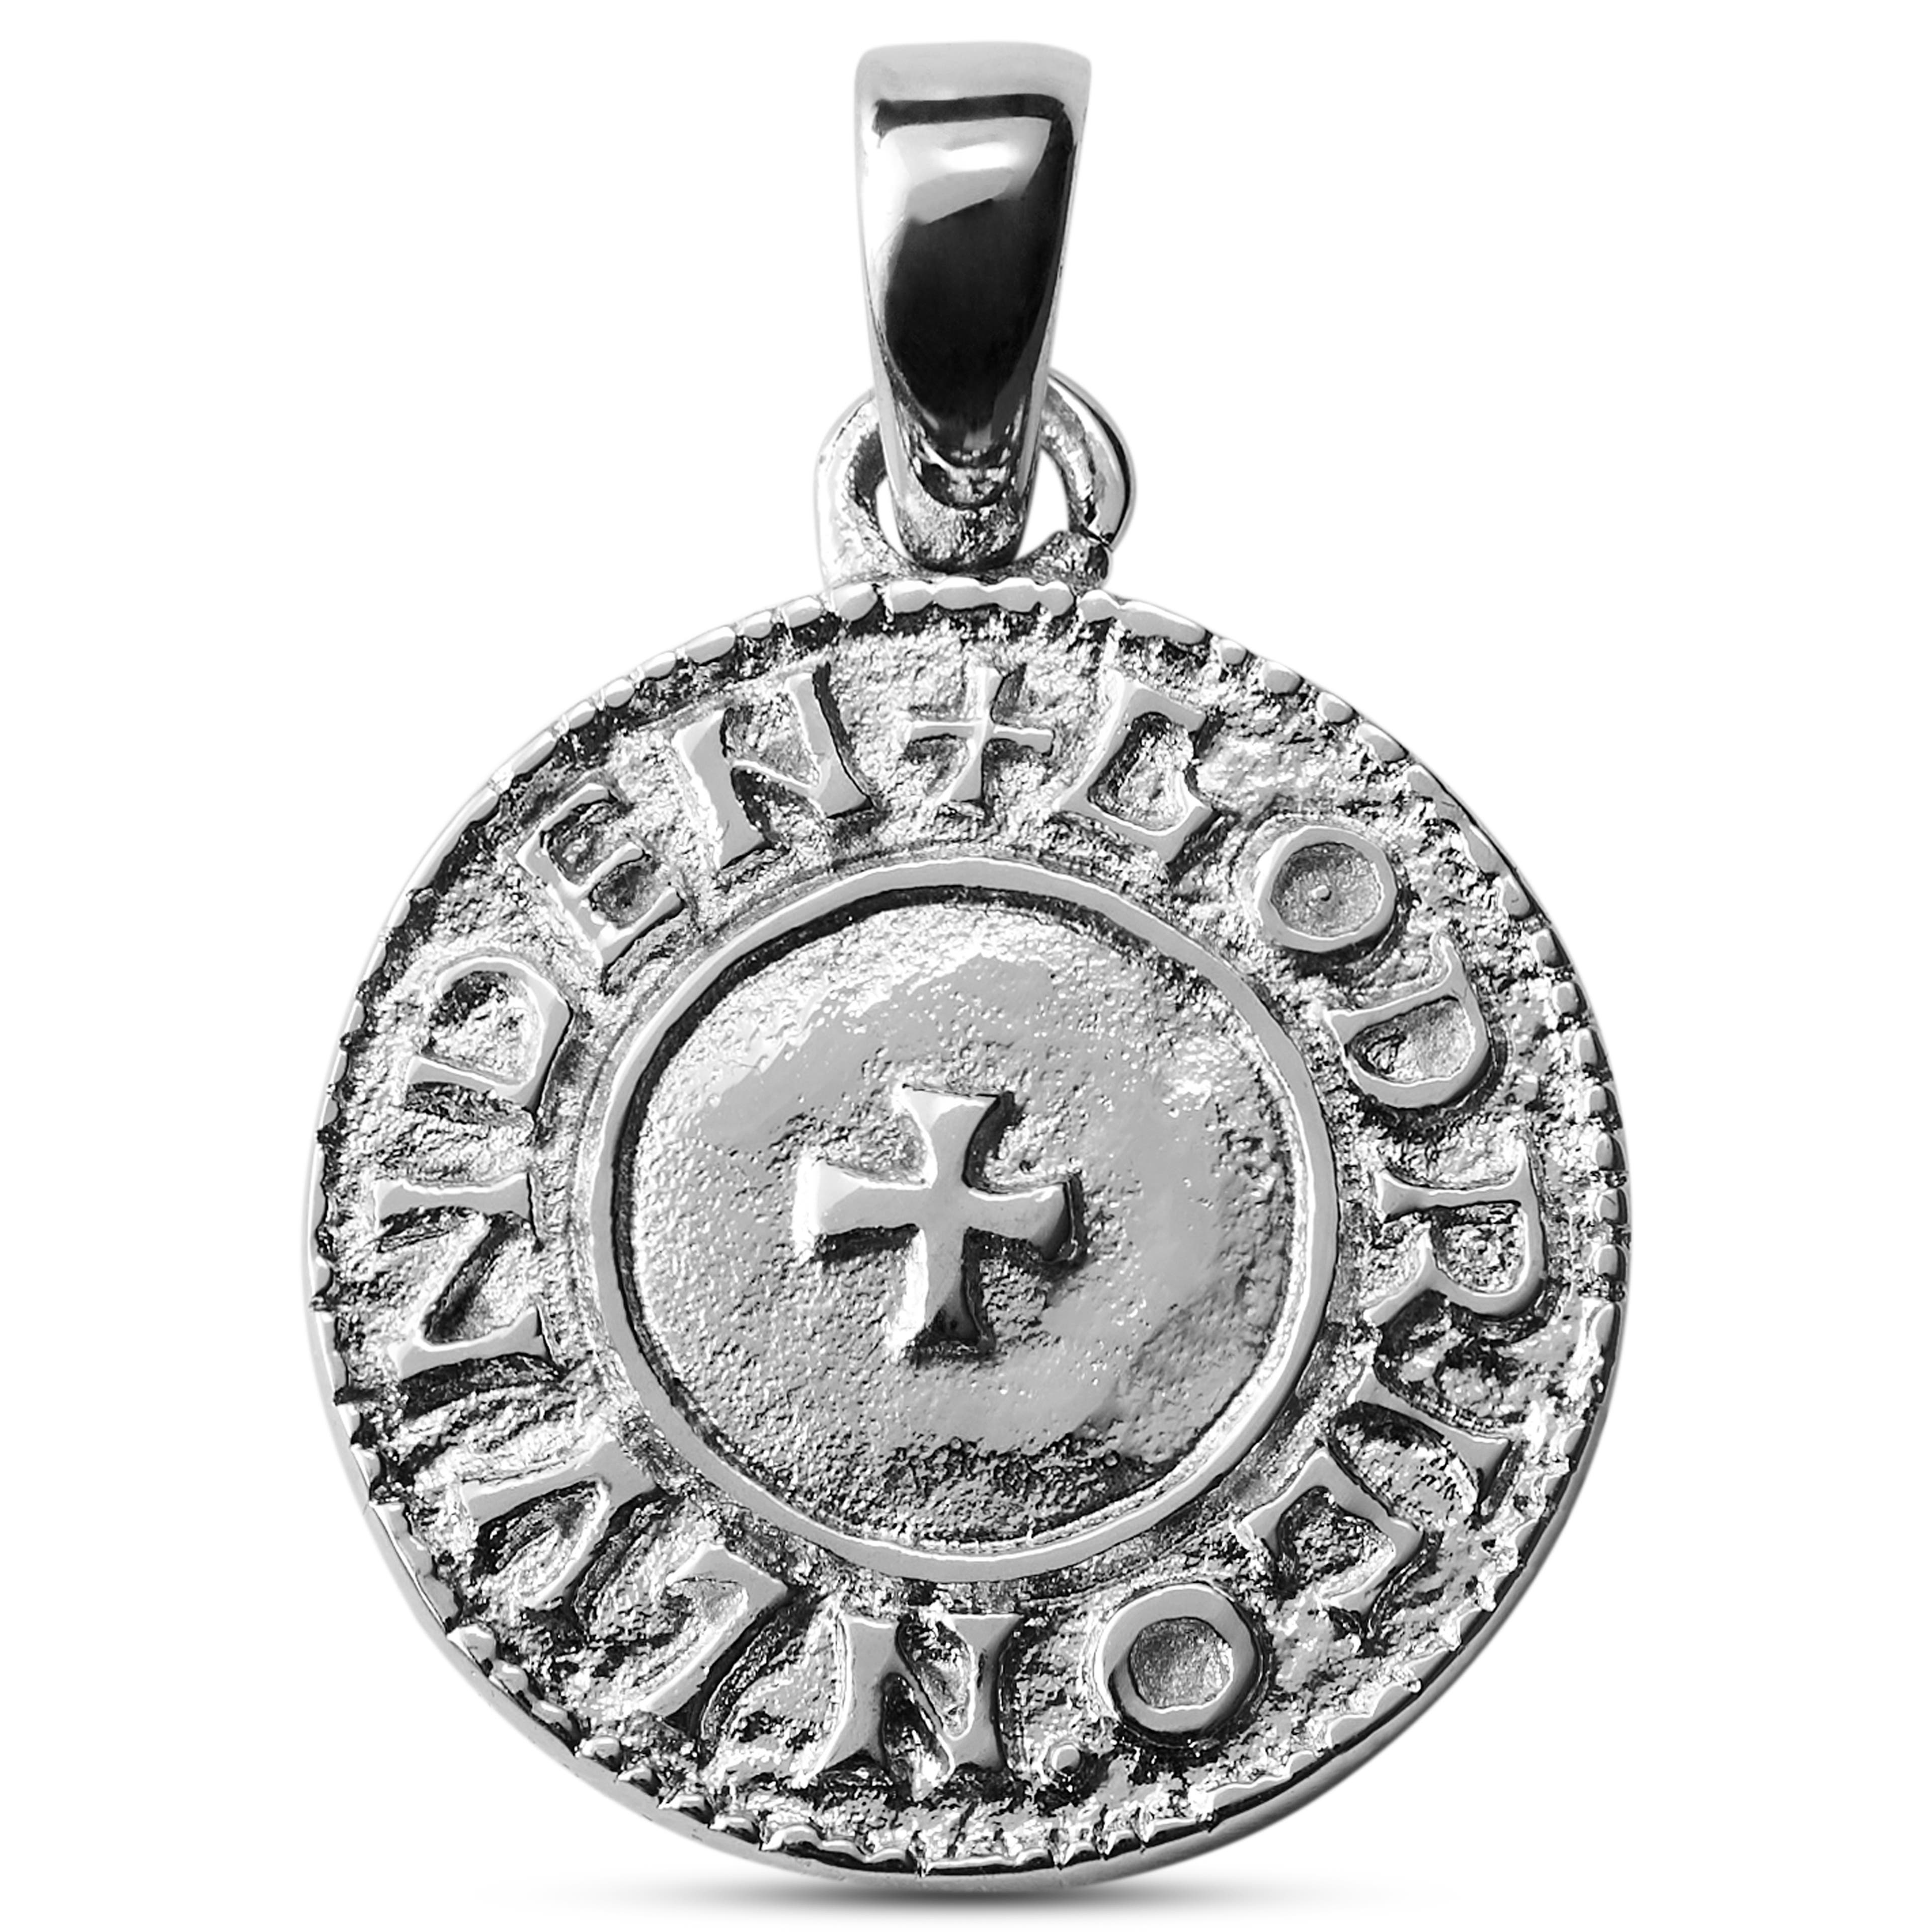 Les Makt ezüst tónusú Viking érmés medál